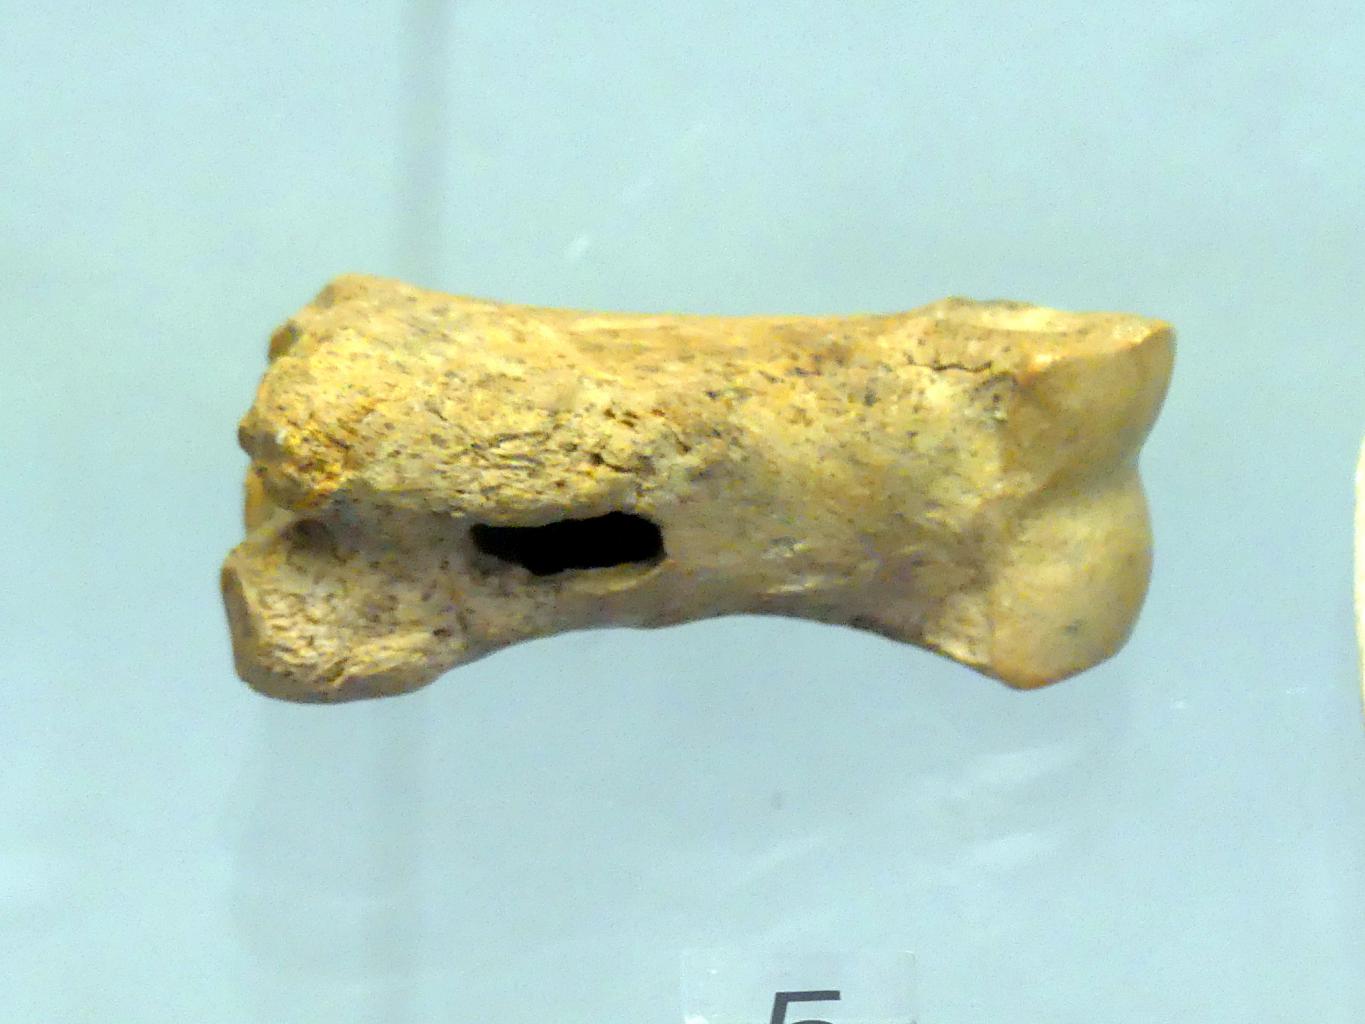 Durchbohrter Rentierfußknochen, Jungpaläolithikum, 43000 - 10000 v. Chr.